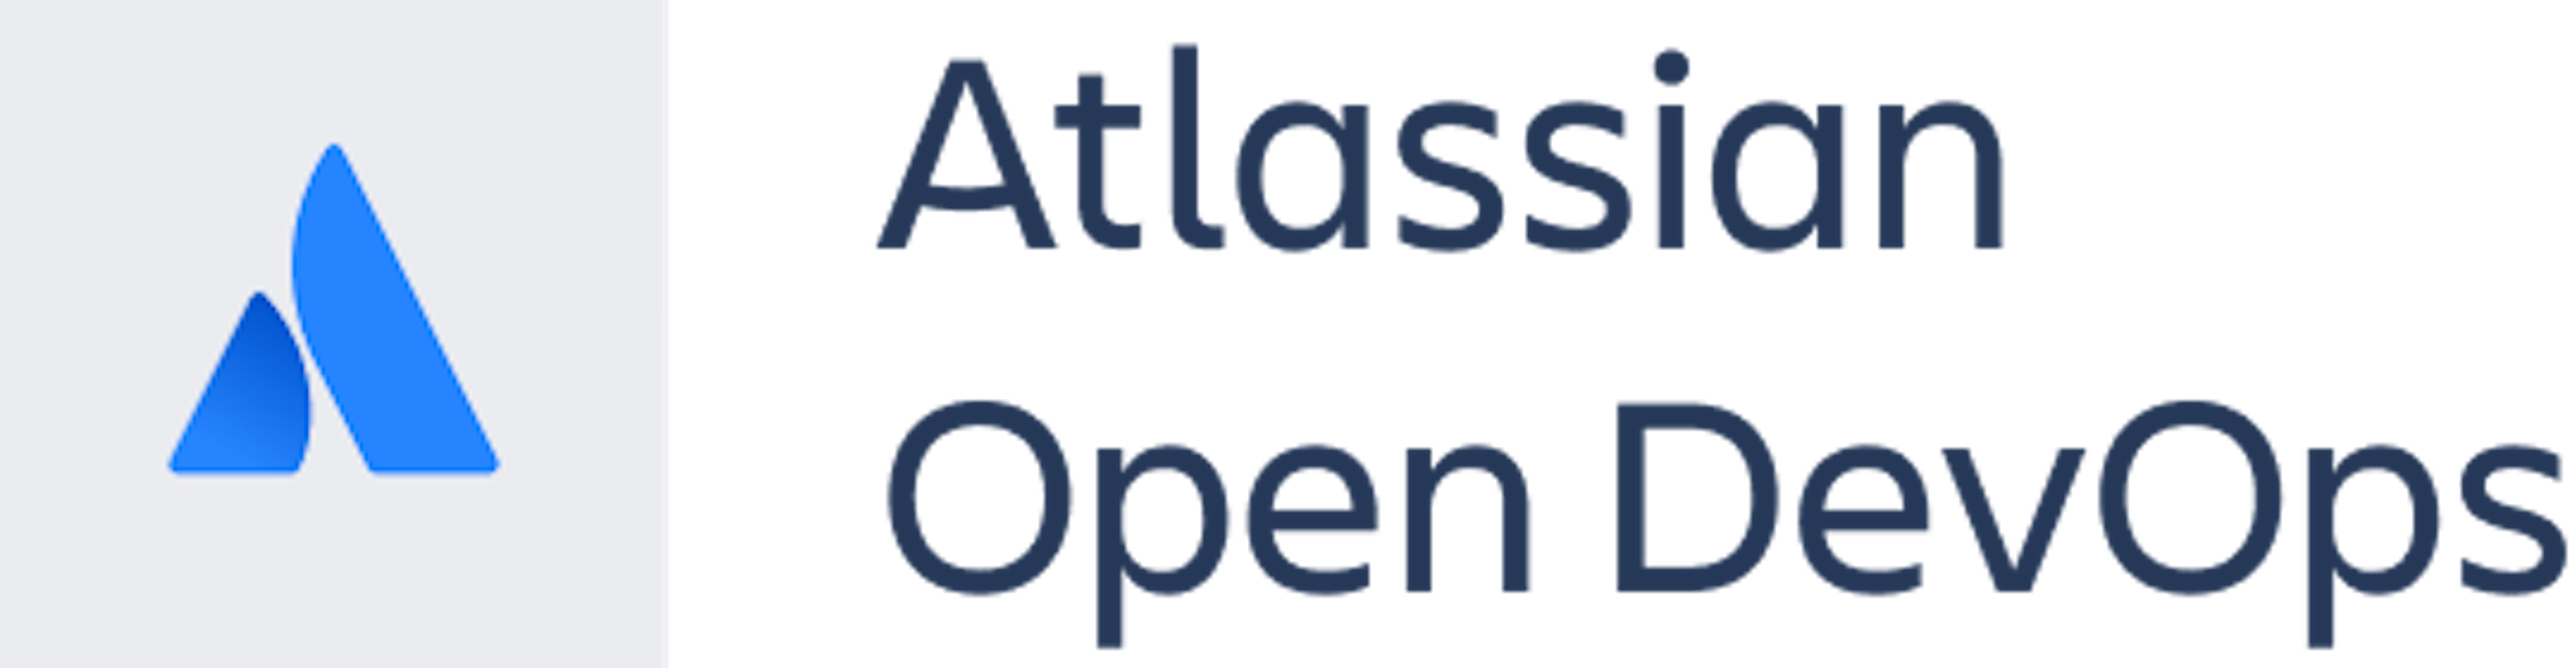 Open DevOps Logo